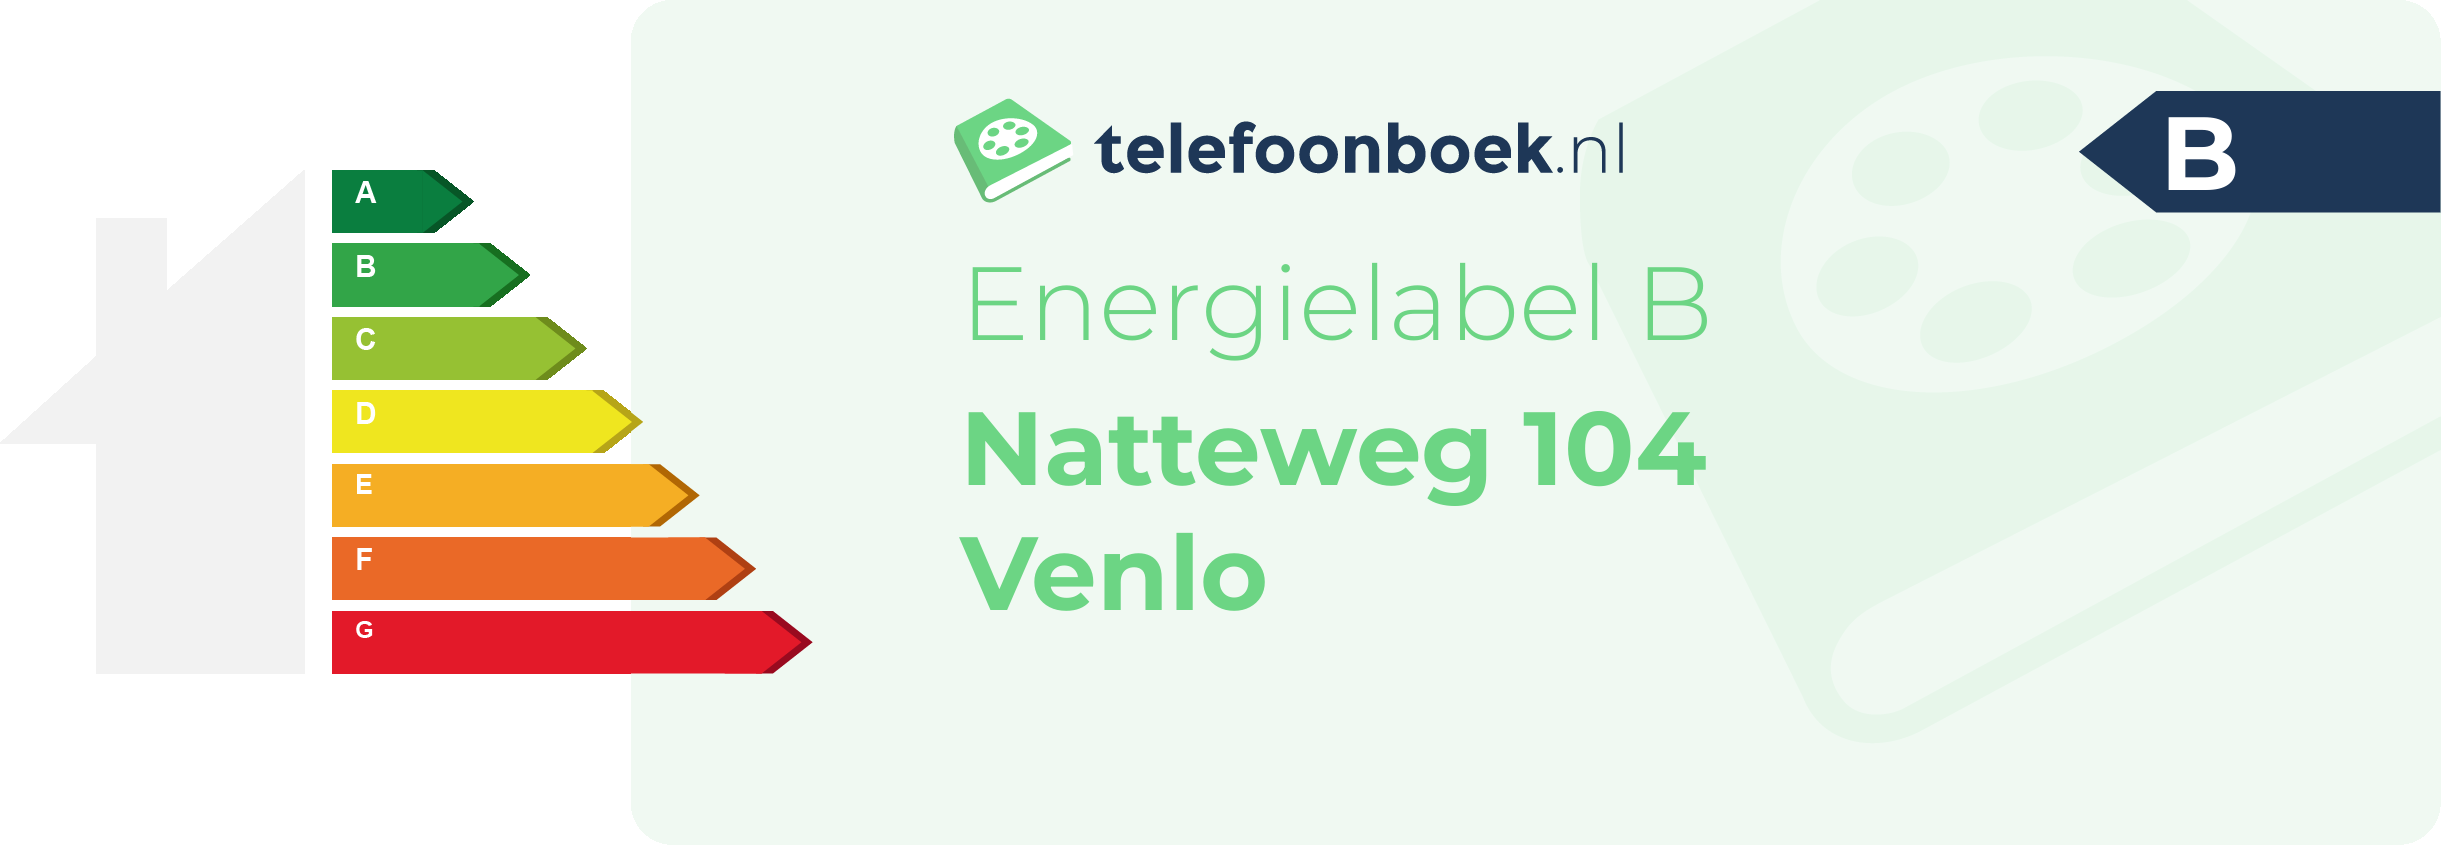 Energielabel Natteweg 104 Venlo